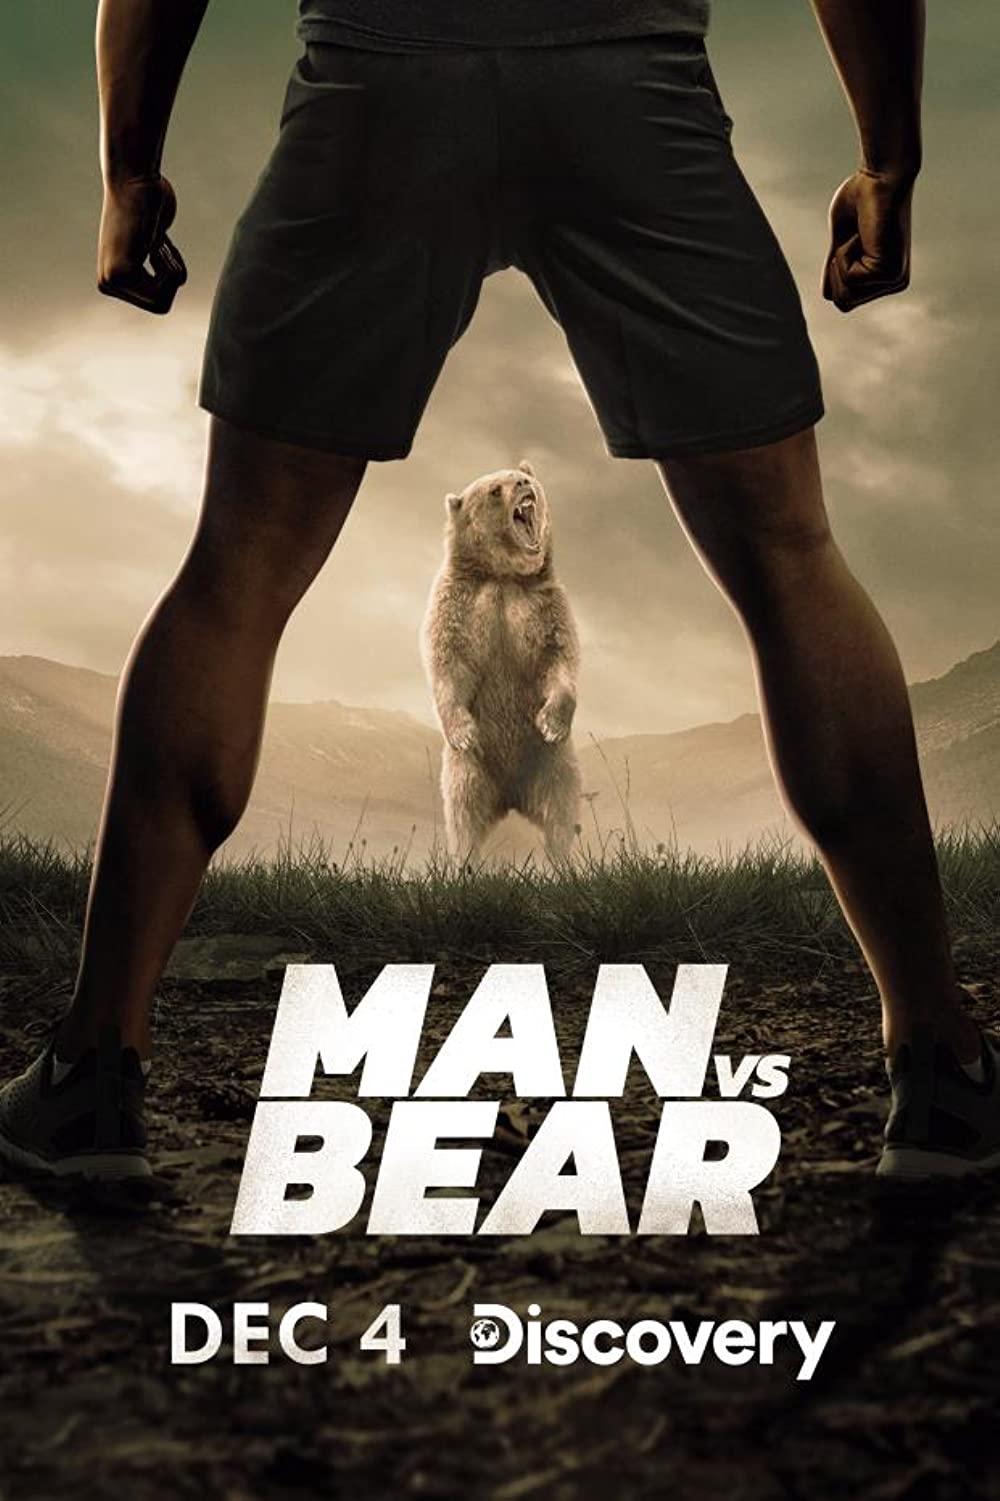 Filmbeschreibung zu Man vs Bear